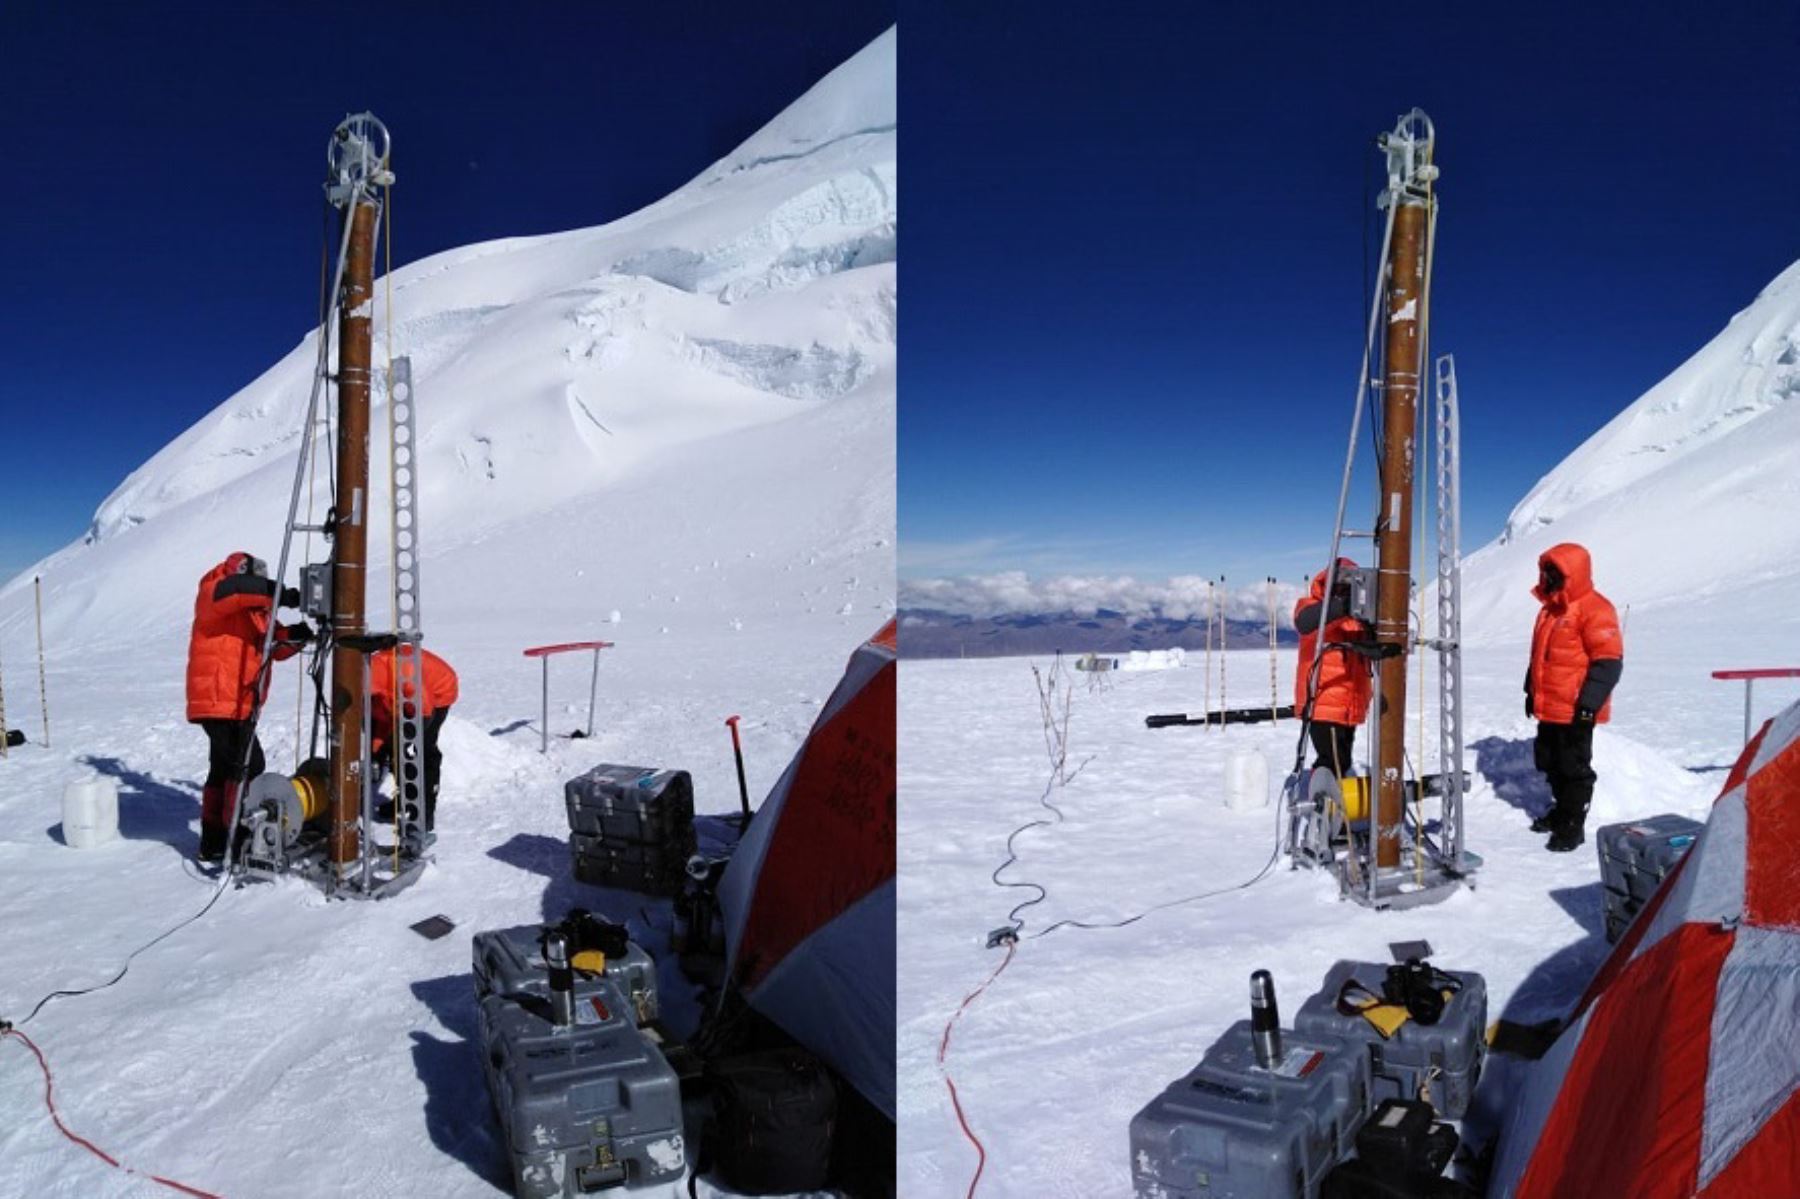 Investigación científica en la cumbre del nevado Huascarán, en Áncash, avanza sin complicaciones. Foto: Cortesía Inaigem